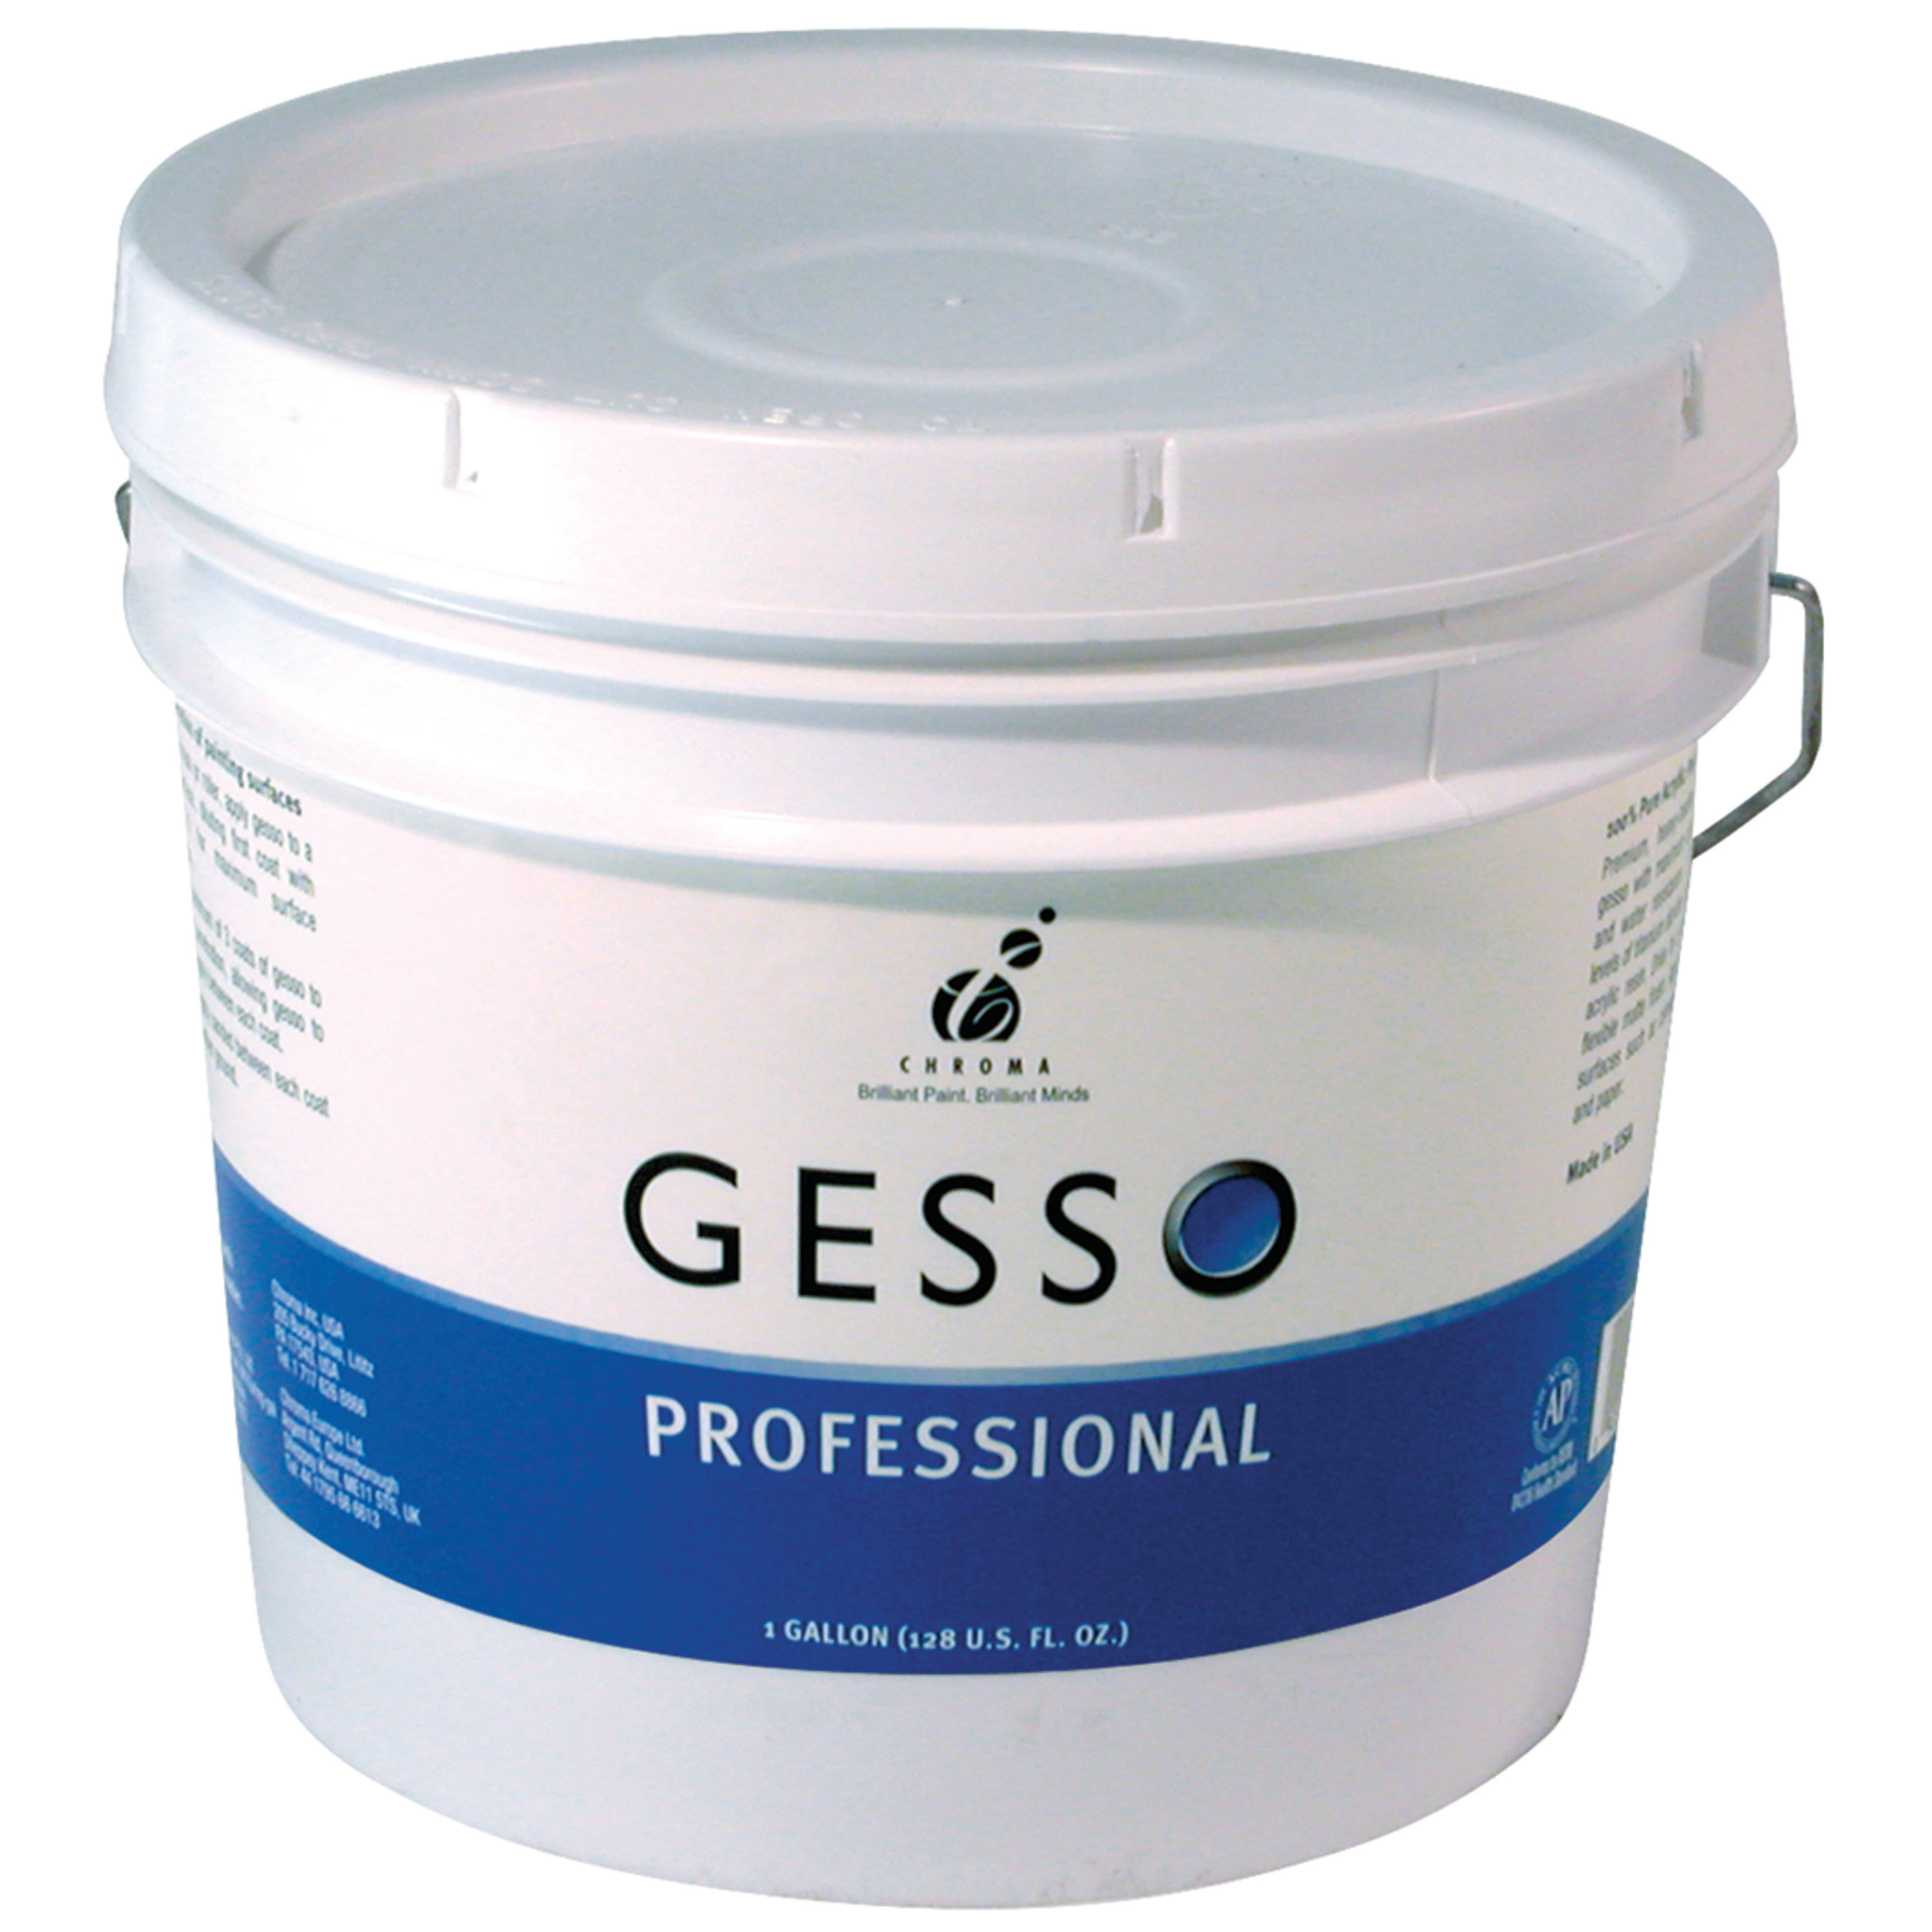 Chroma - Professional Gesso - Gallon, White